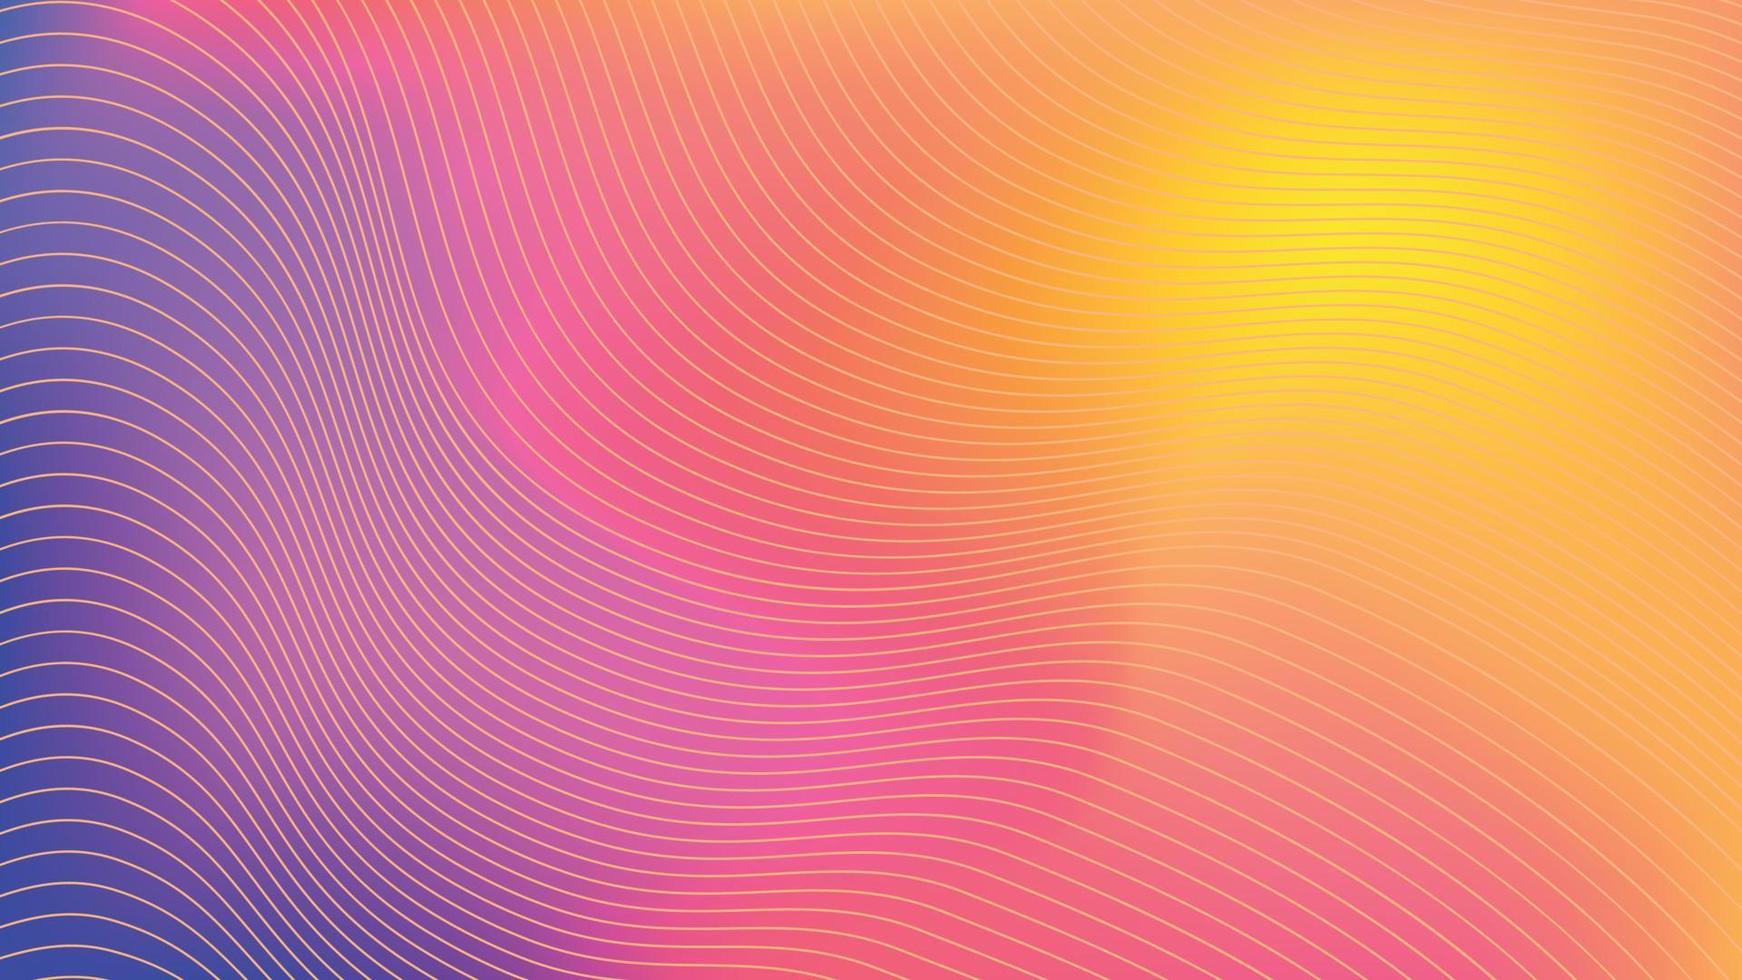 abstrakter Hintergrund des Farbverlaufsstreifens. glatt weich und warm hell zart violett, gelb, rosa Farbverlauf für App, Webdesign, Webseiten, Banner, Grußkarten. Vektor-Illustration-Design. vektor